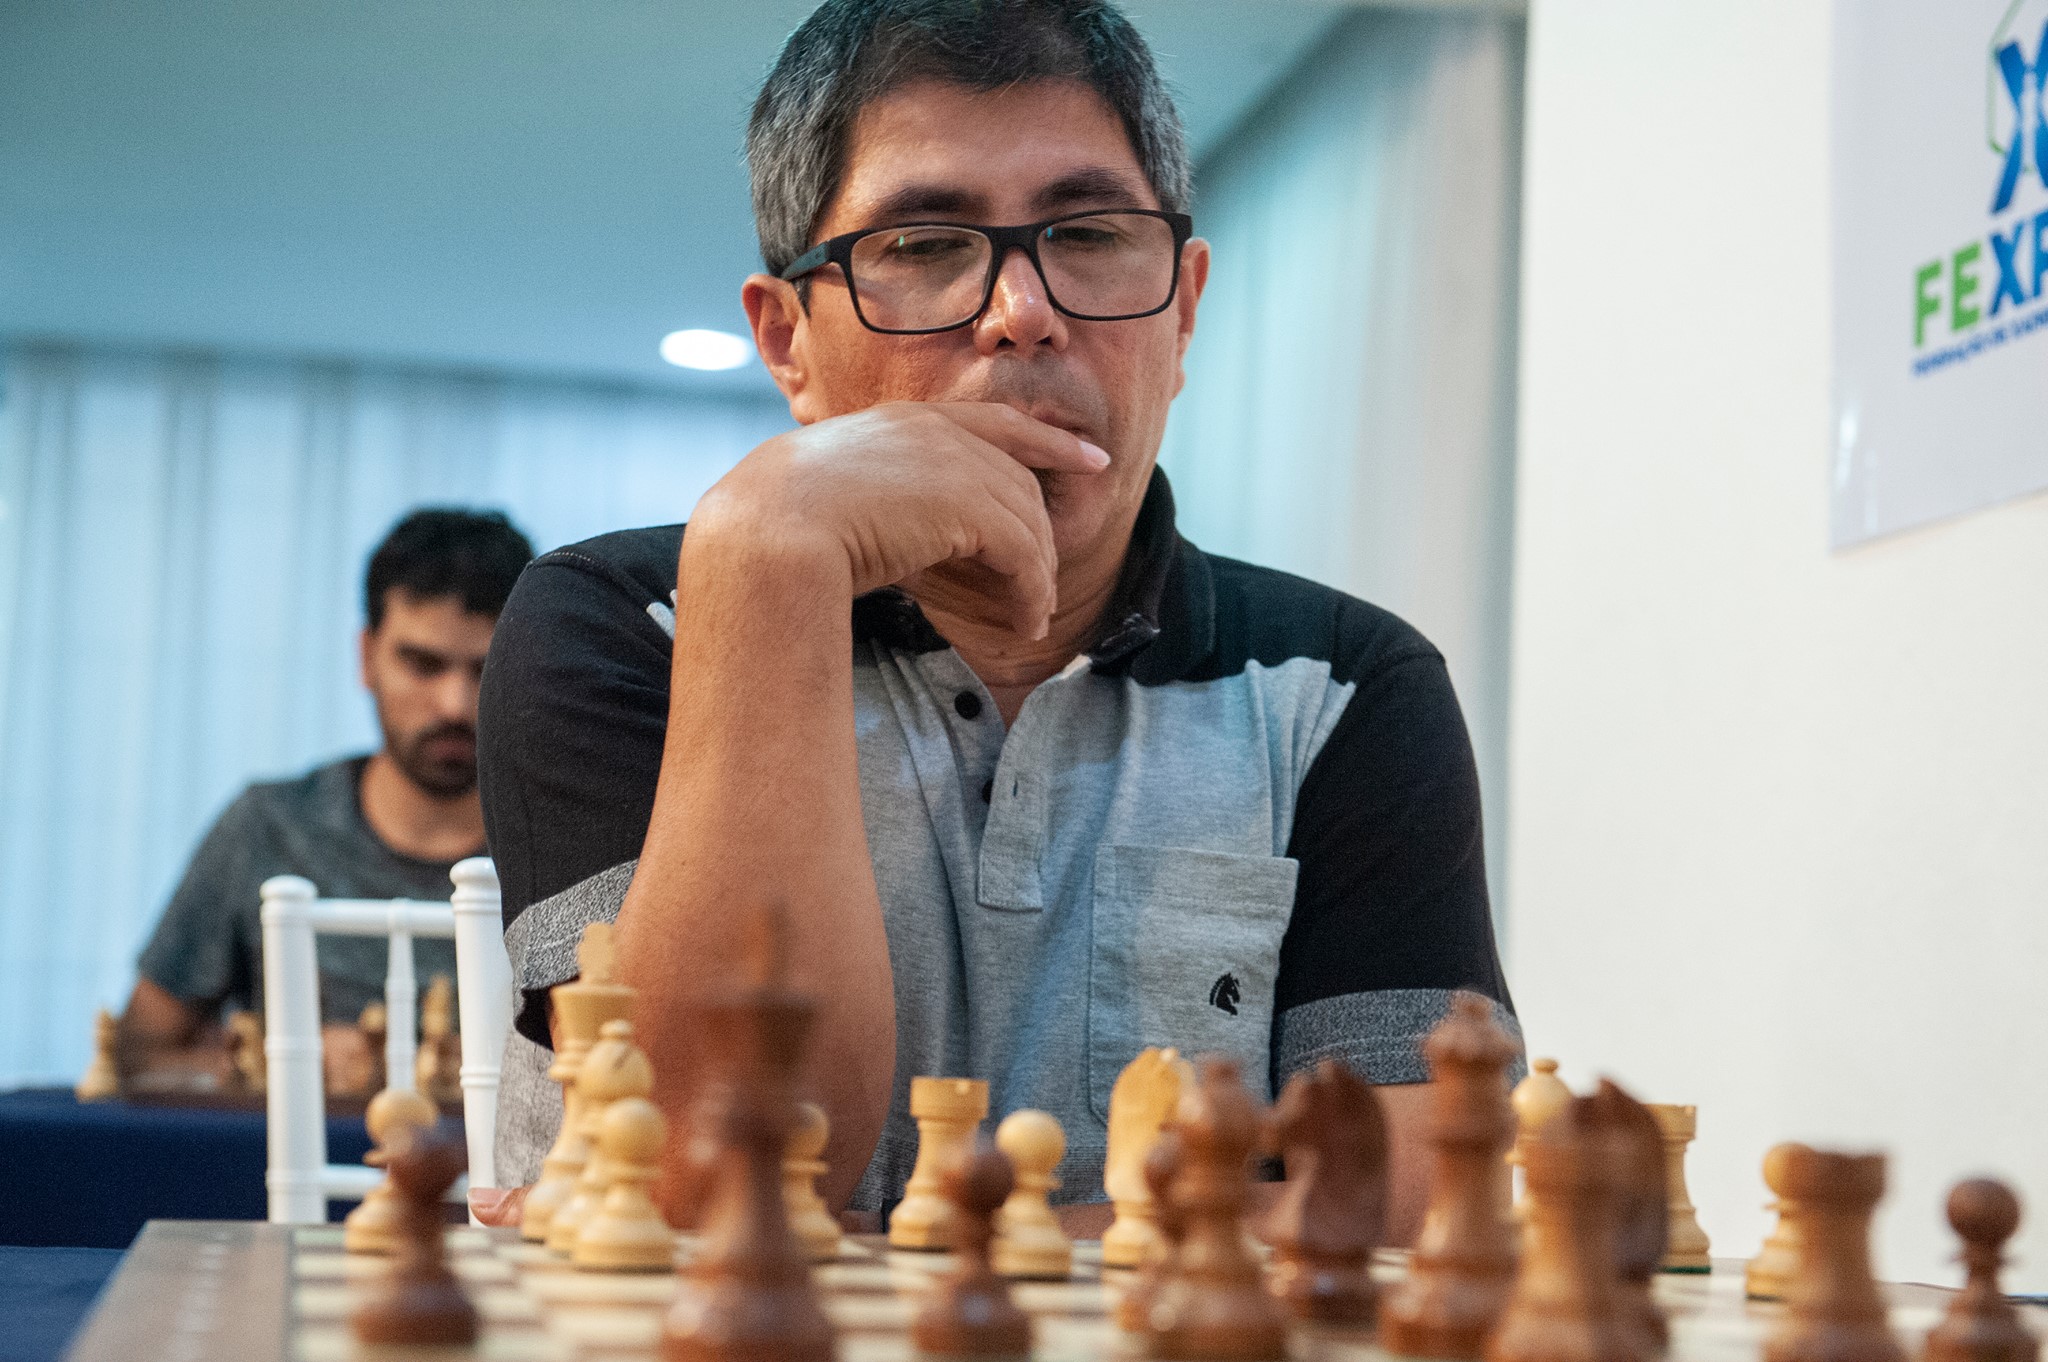 Floripa Chess Open - 👉 Brasileiro fazendo história! 😁 Com 8,5